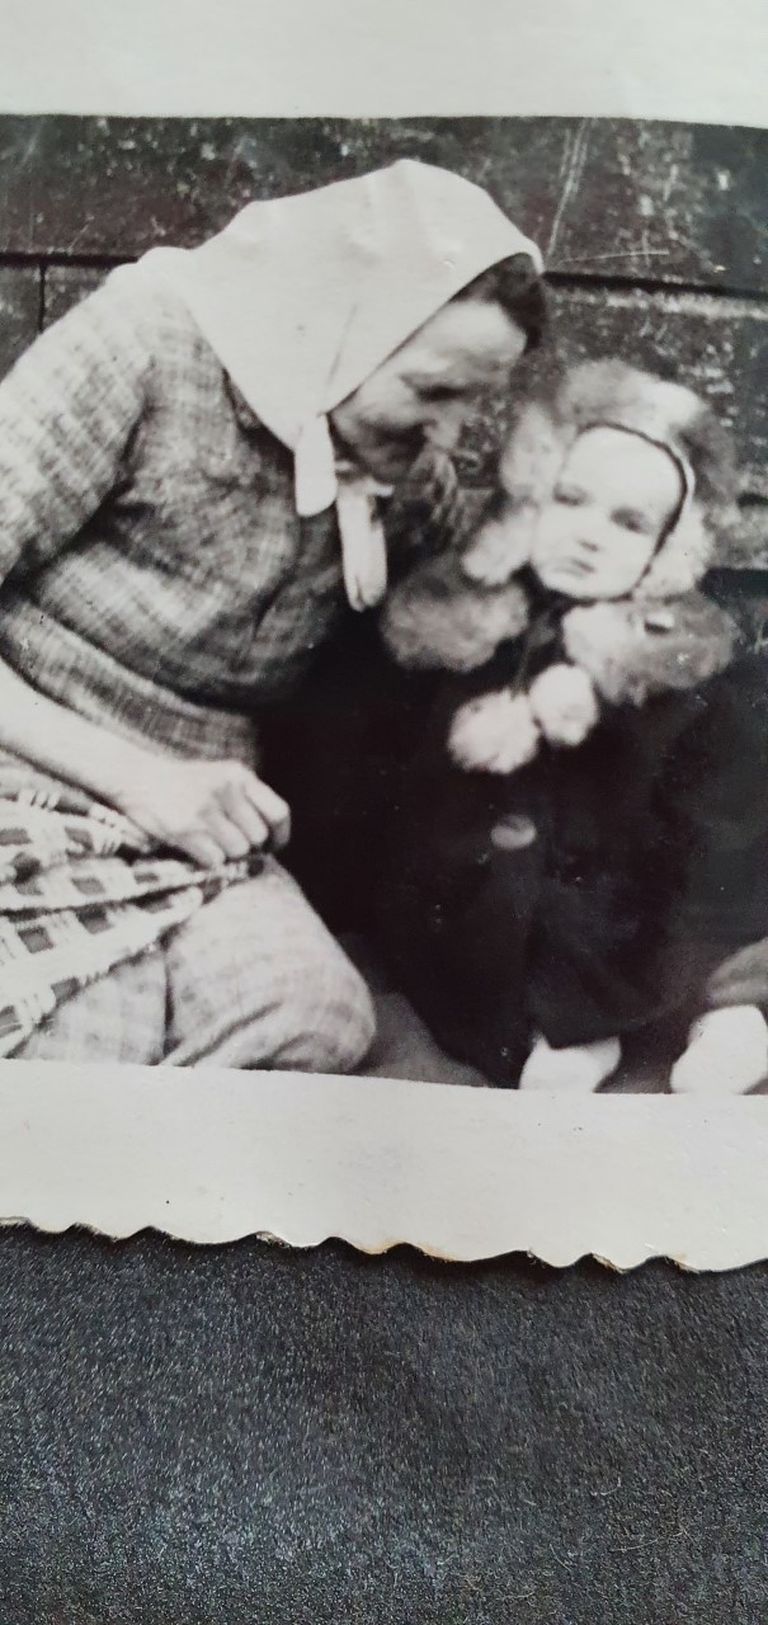 MammaMamma Liine koos Kasahstani vangilaagrist koju toodud tütretütar Ruthiga (minu vanaema) 1950